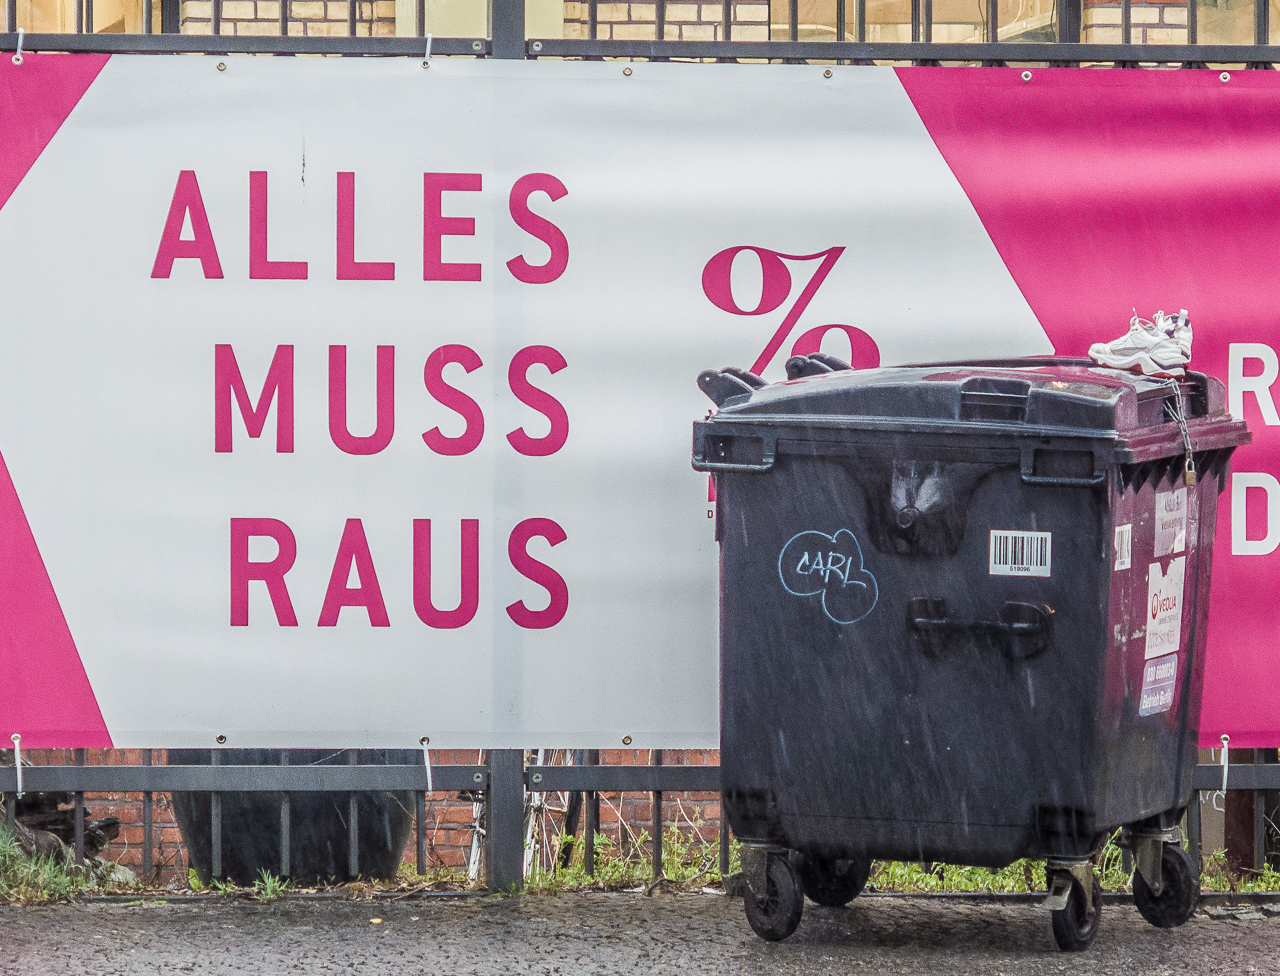 Weiß-pinkes Plakat "Alles muss raus", davor eine Mülltonne